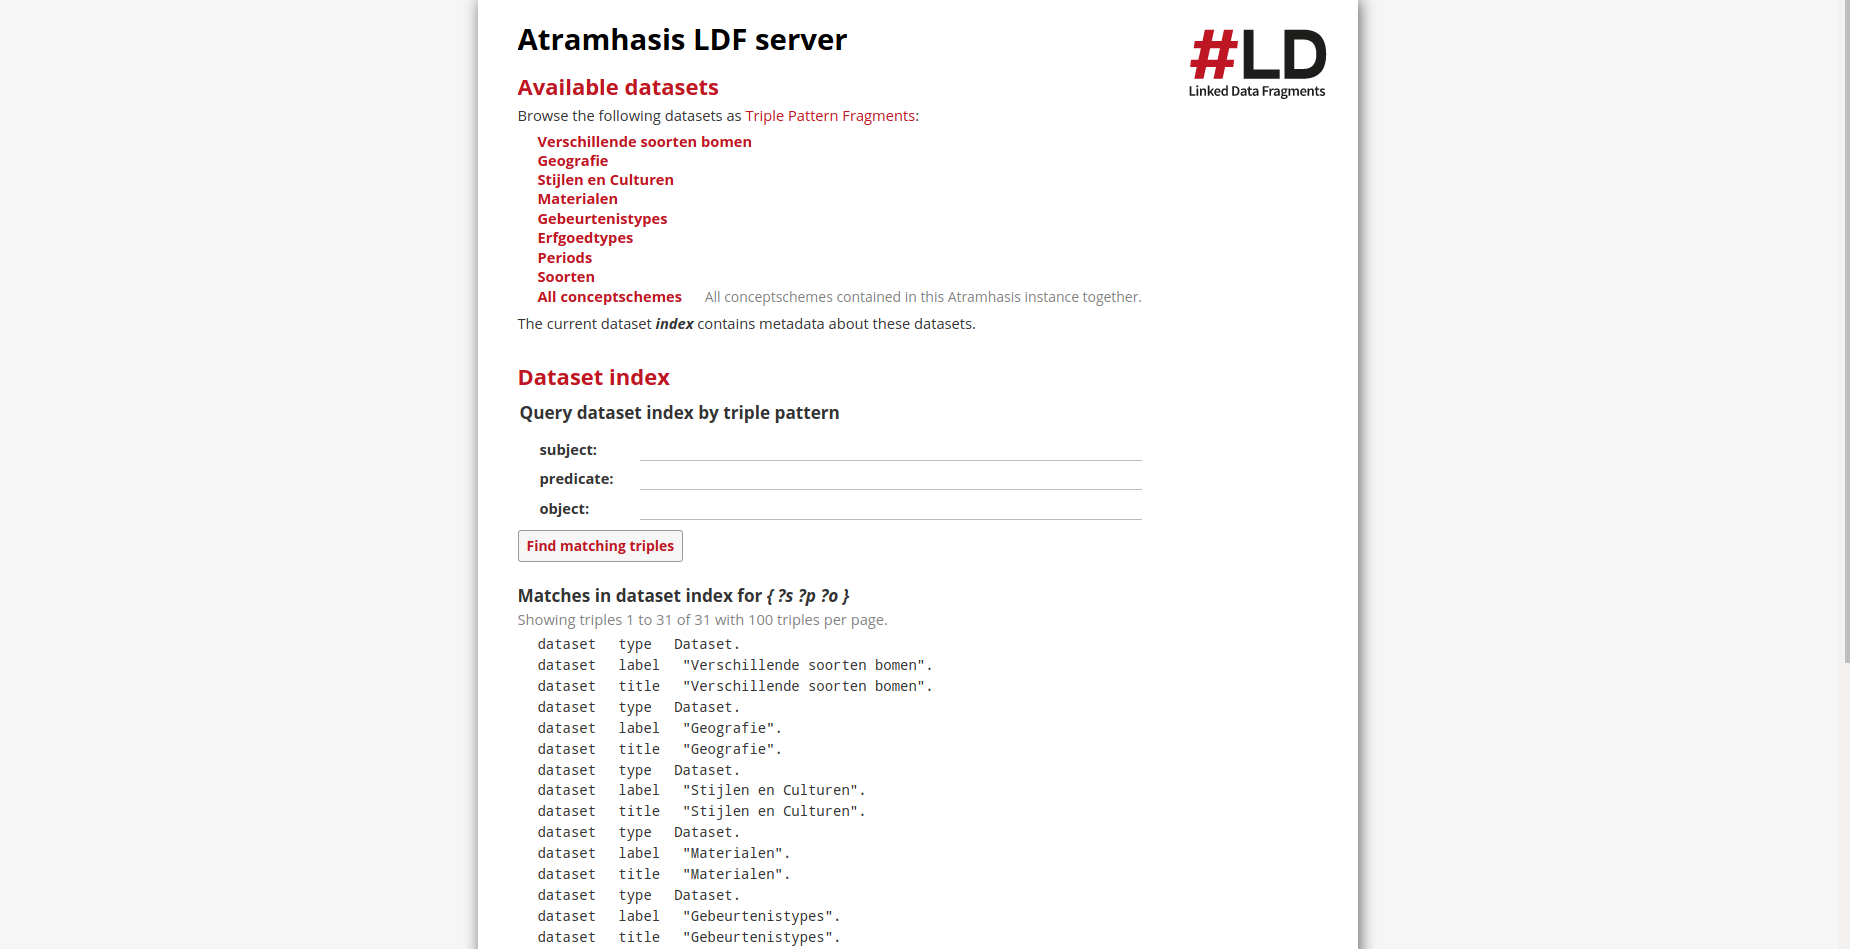 The Atramhasis LDF server